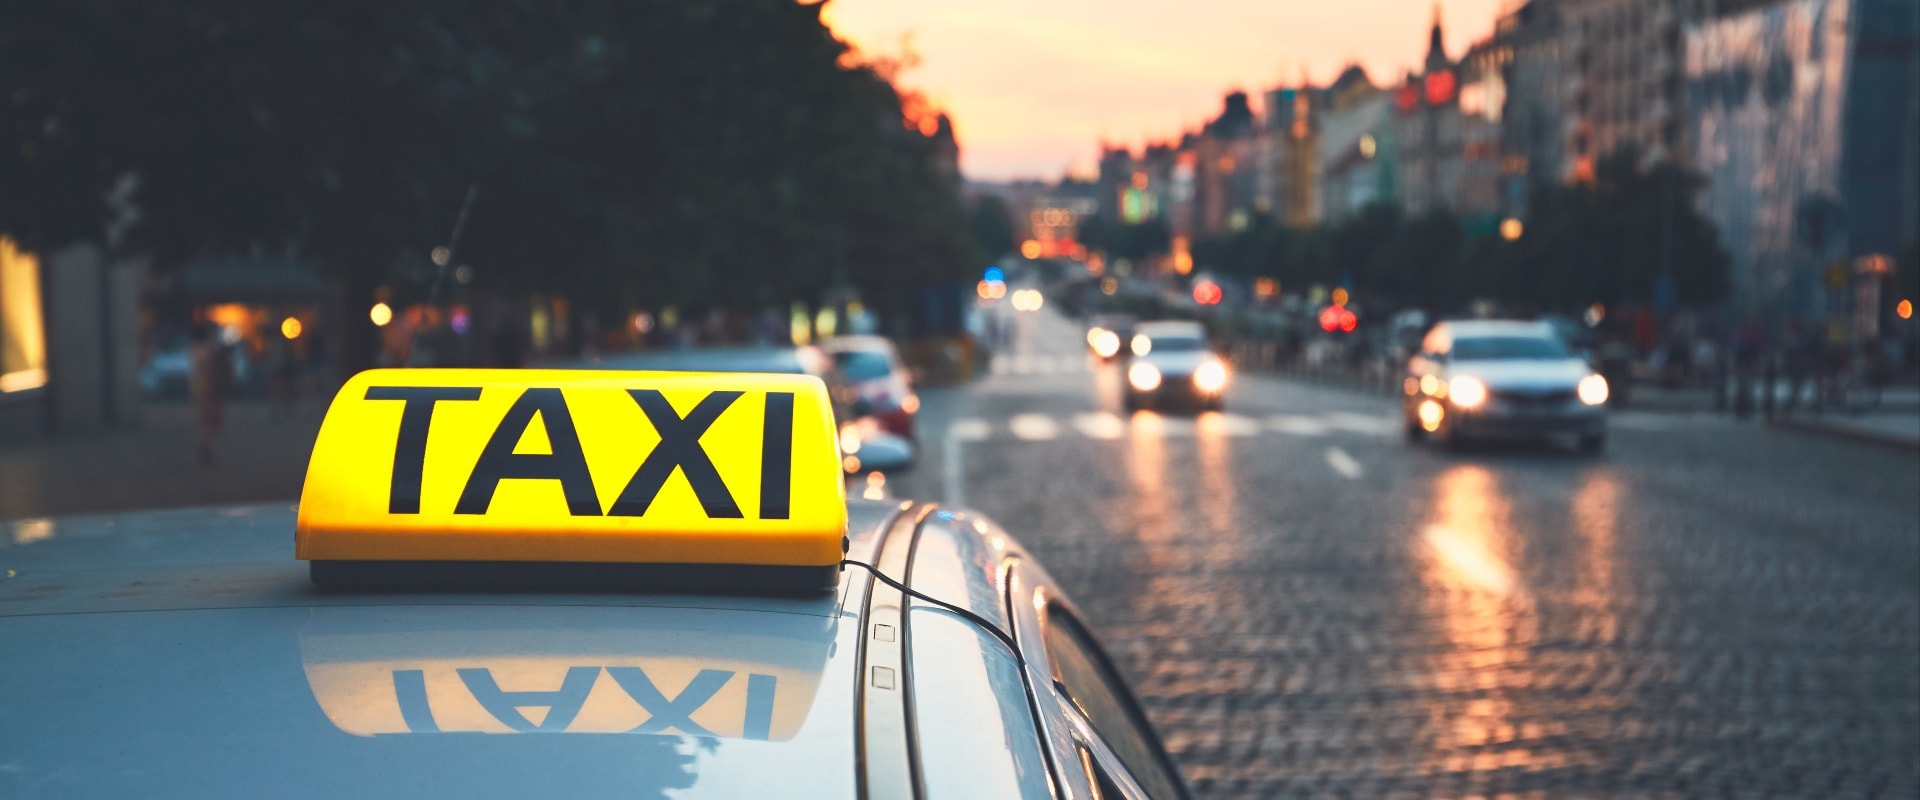 Taxi car on the city street